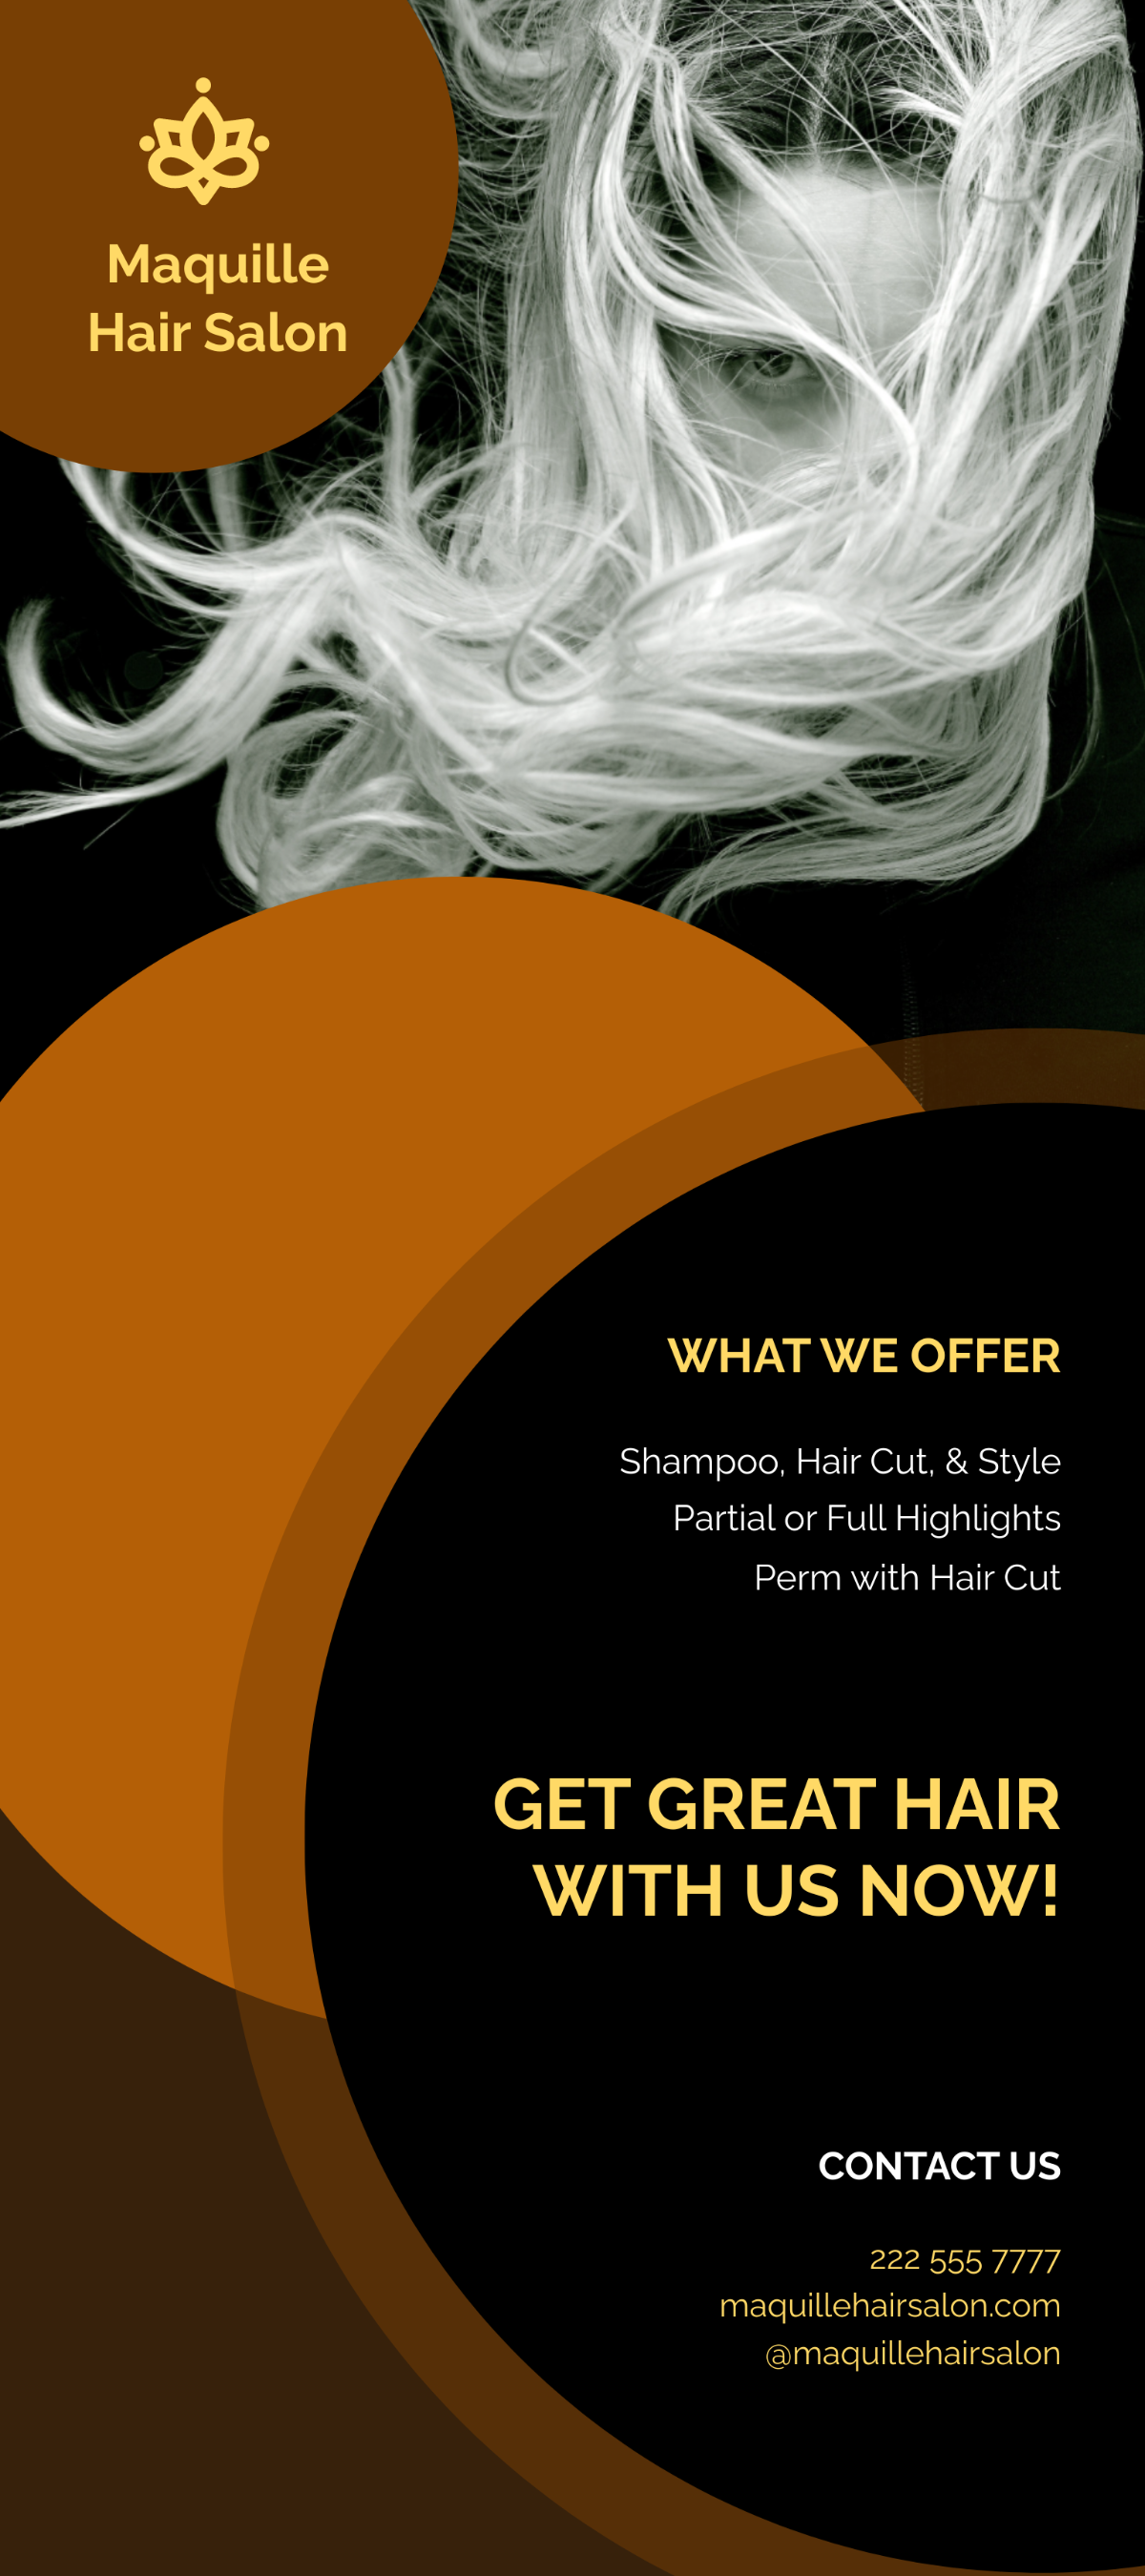 Free Hair Stylist & Salon Rack Card Template